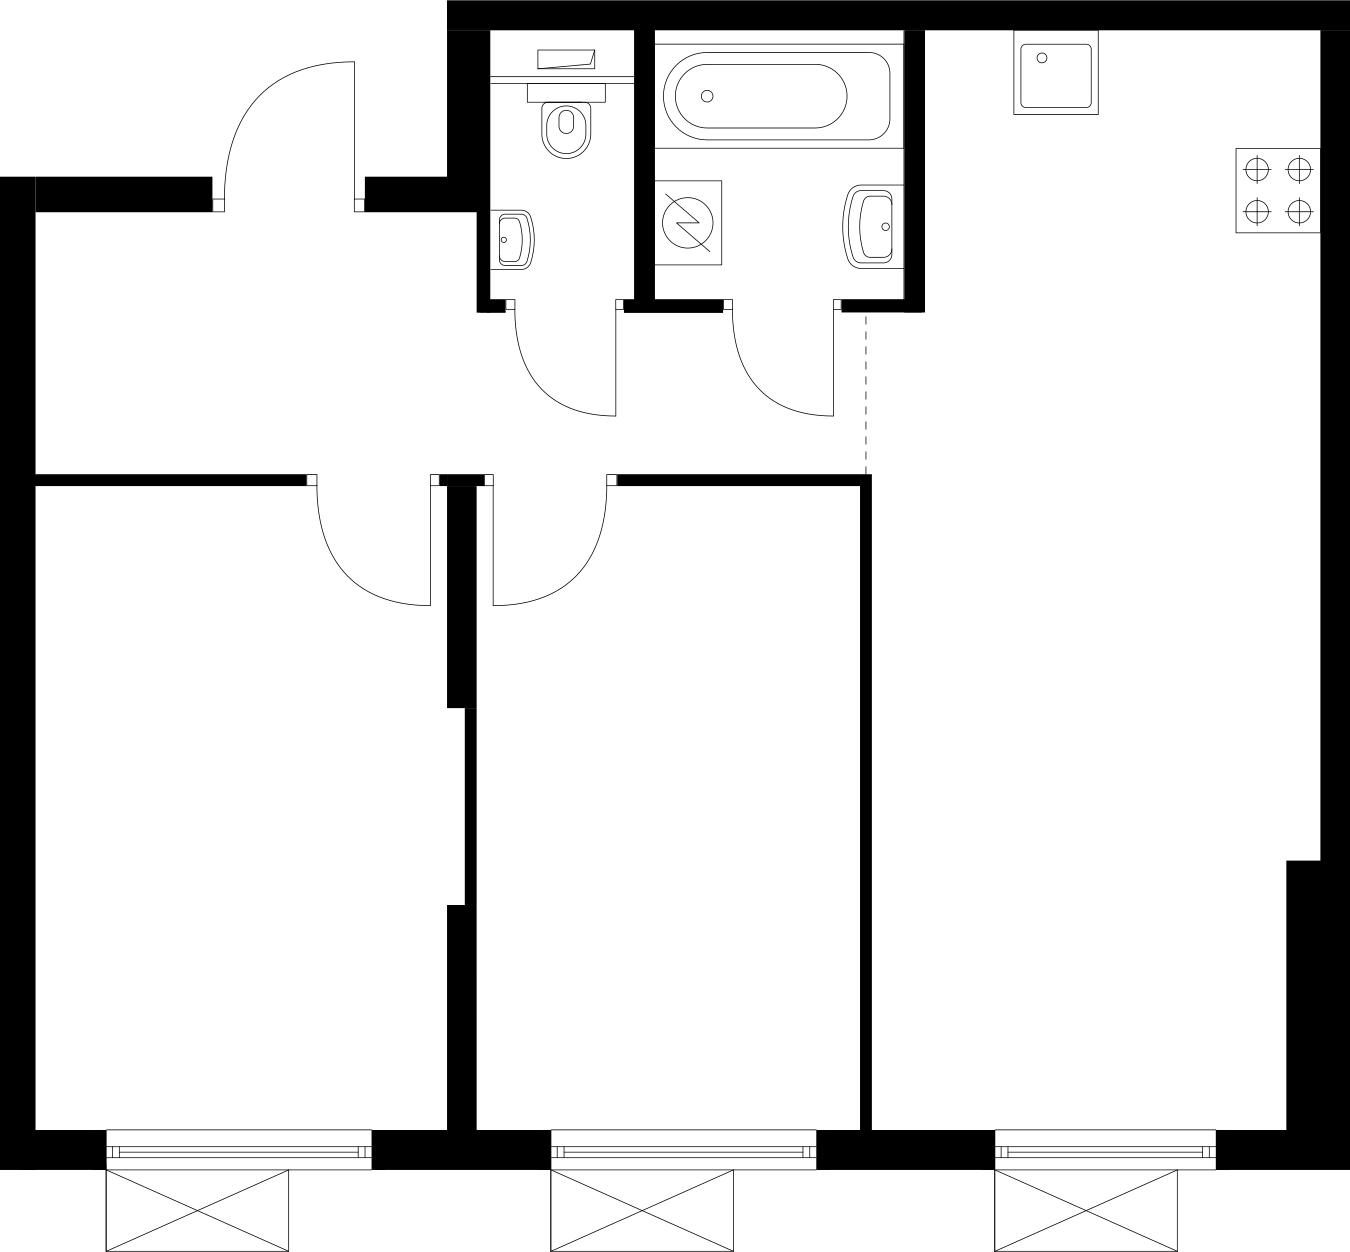 3-комнатная квартира с отделкой в МФК Маршал на 12 этаже в 1 секции. Дом сдан.